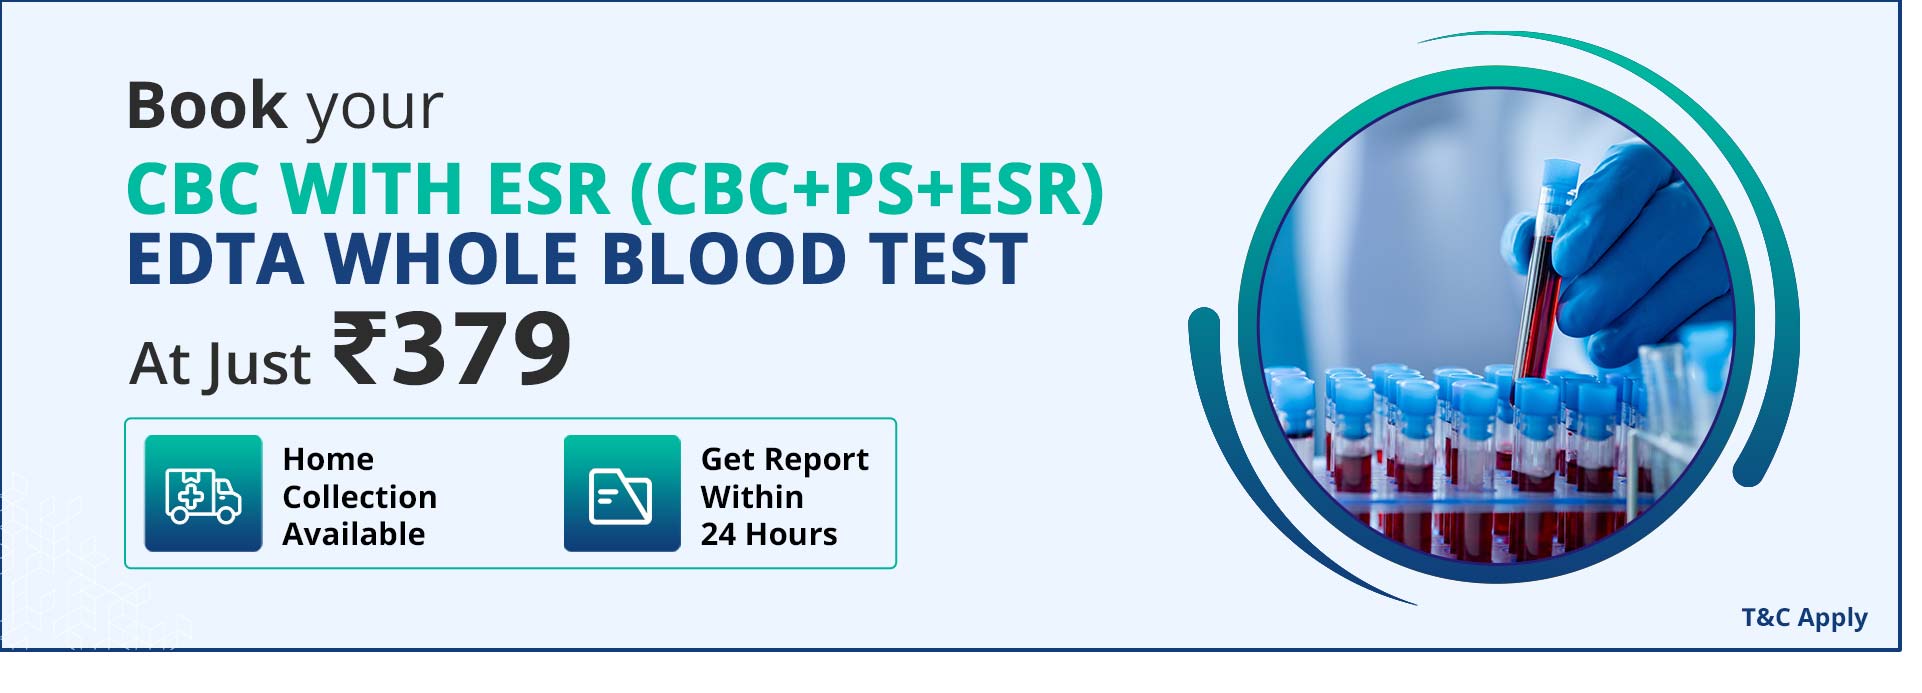 CBC with ESR (CBC+PS+ESR) EDTA Whole Blood Test